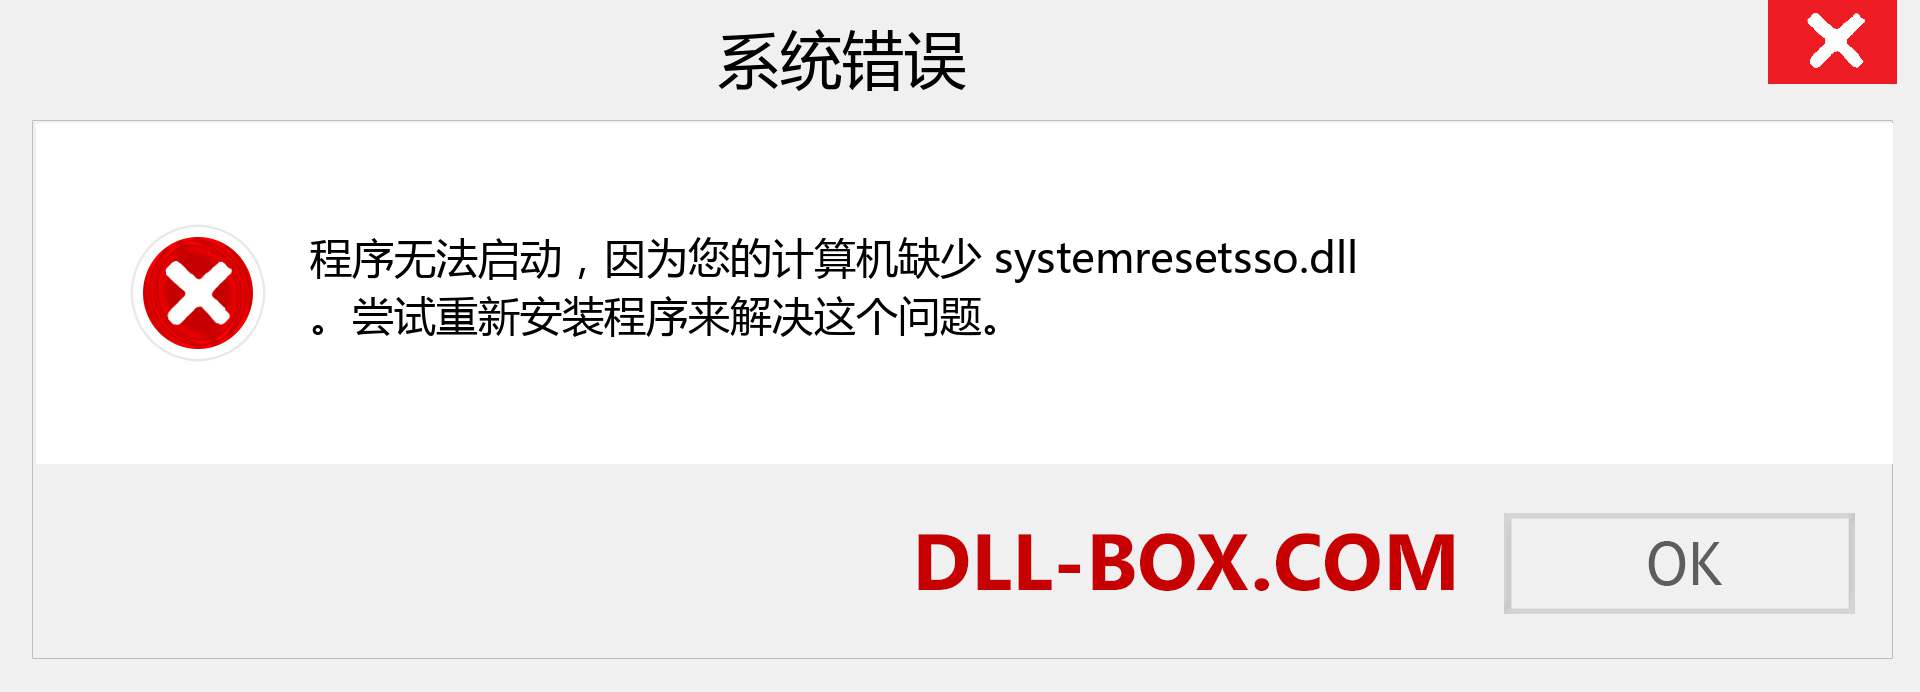 systemresetsso.dll 文件丢失？。 适用于 Windows 7、8、10 的下载 - 修复 Windows、照片、图像上的 systemresetsso dll 丢失错误